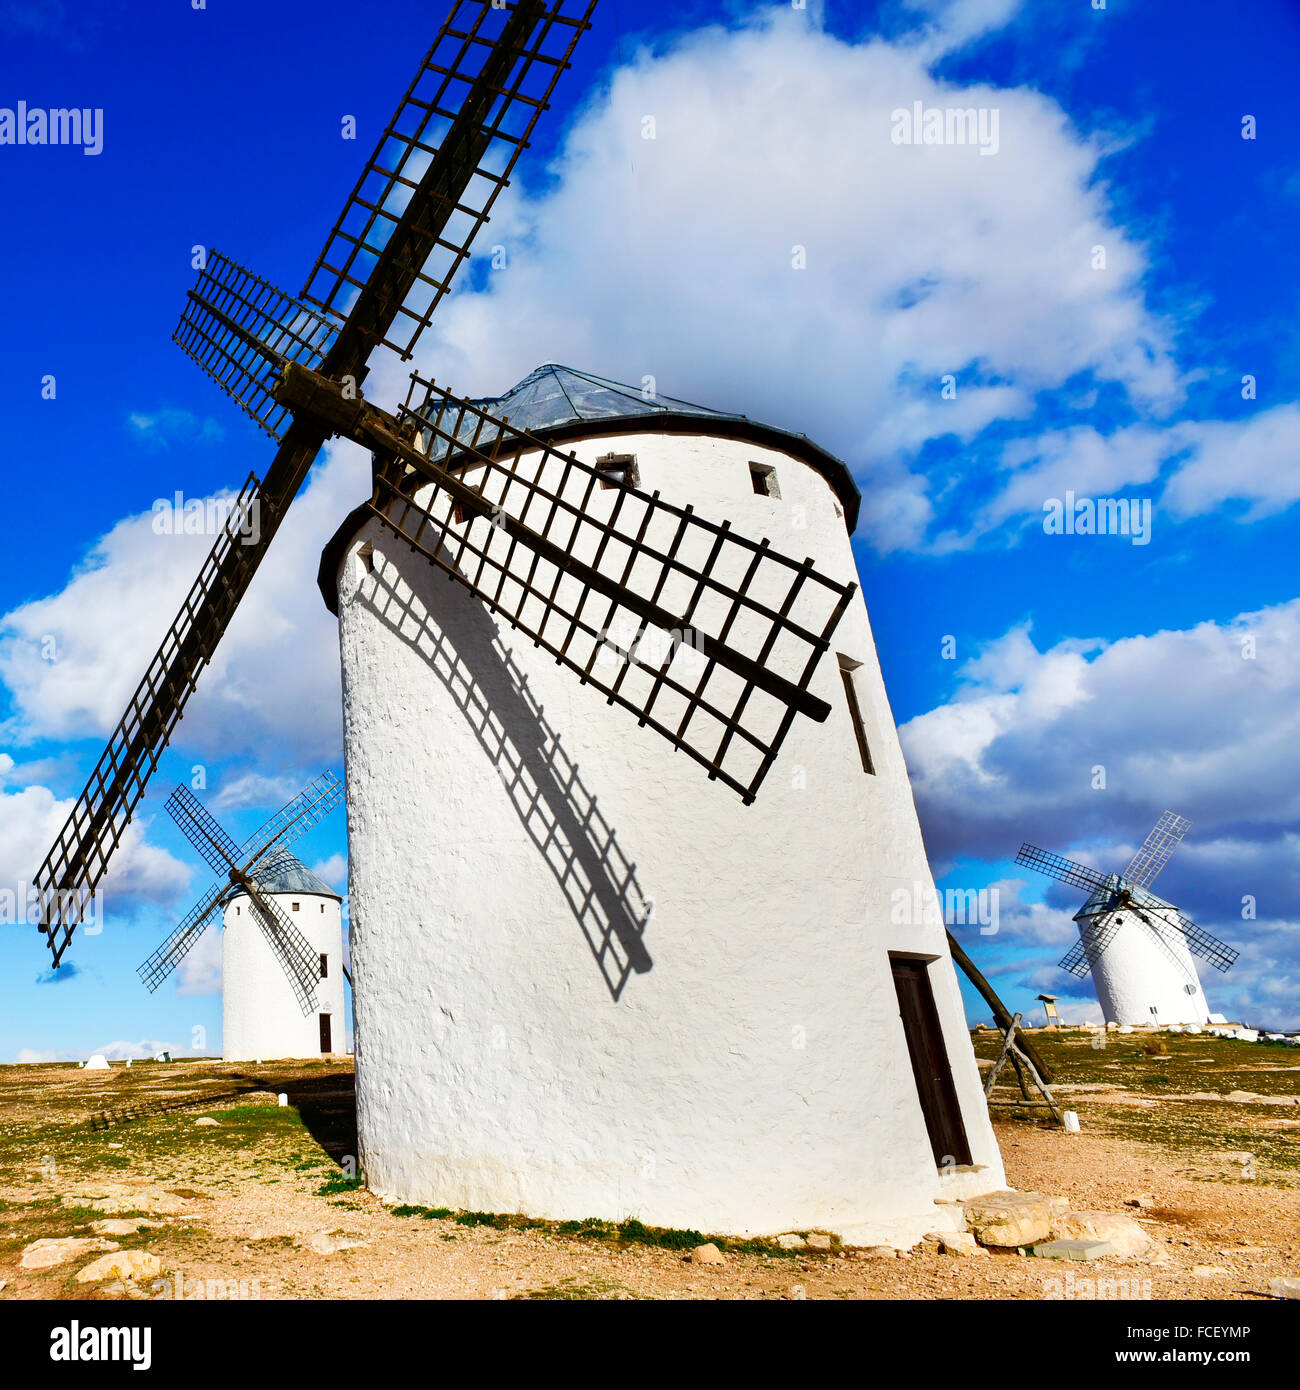 Un moulin à vent traditionnel blanc à Campo de Criptana, Espagne Banque D'Images